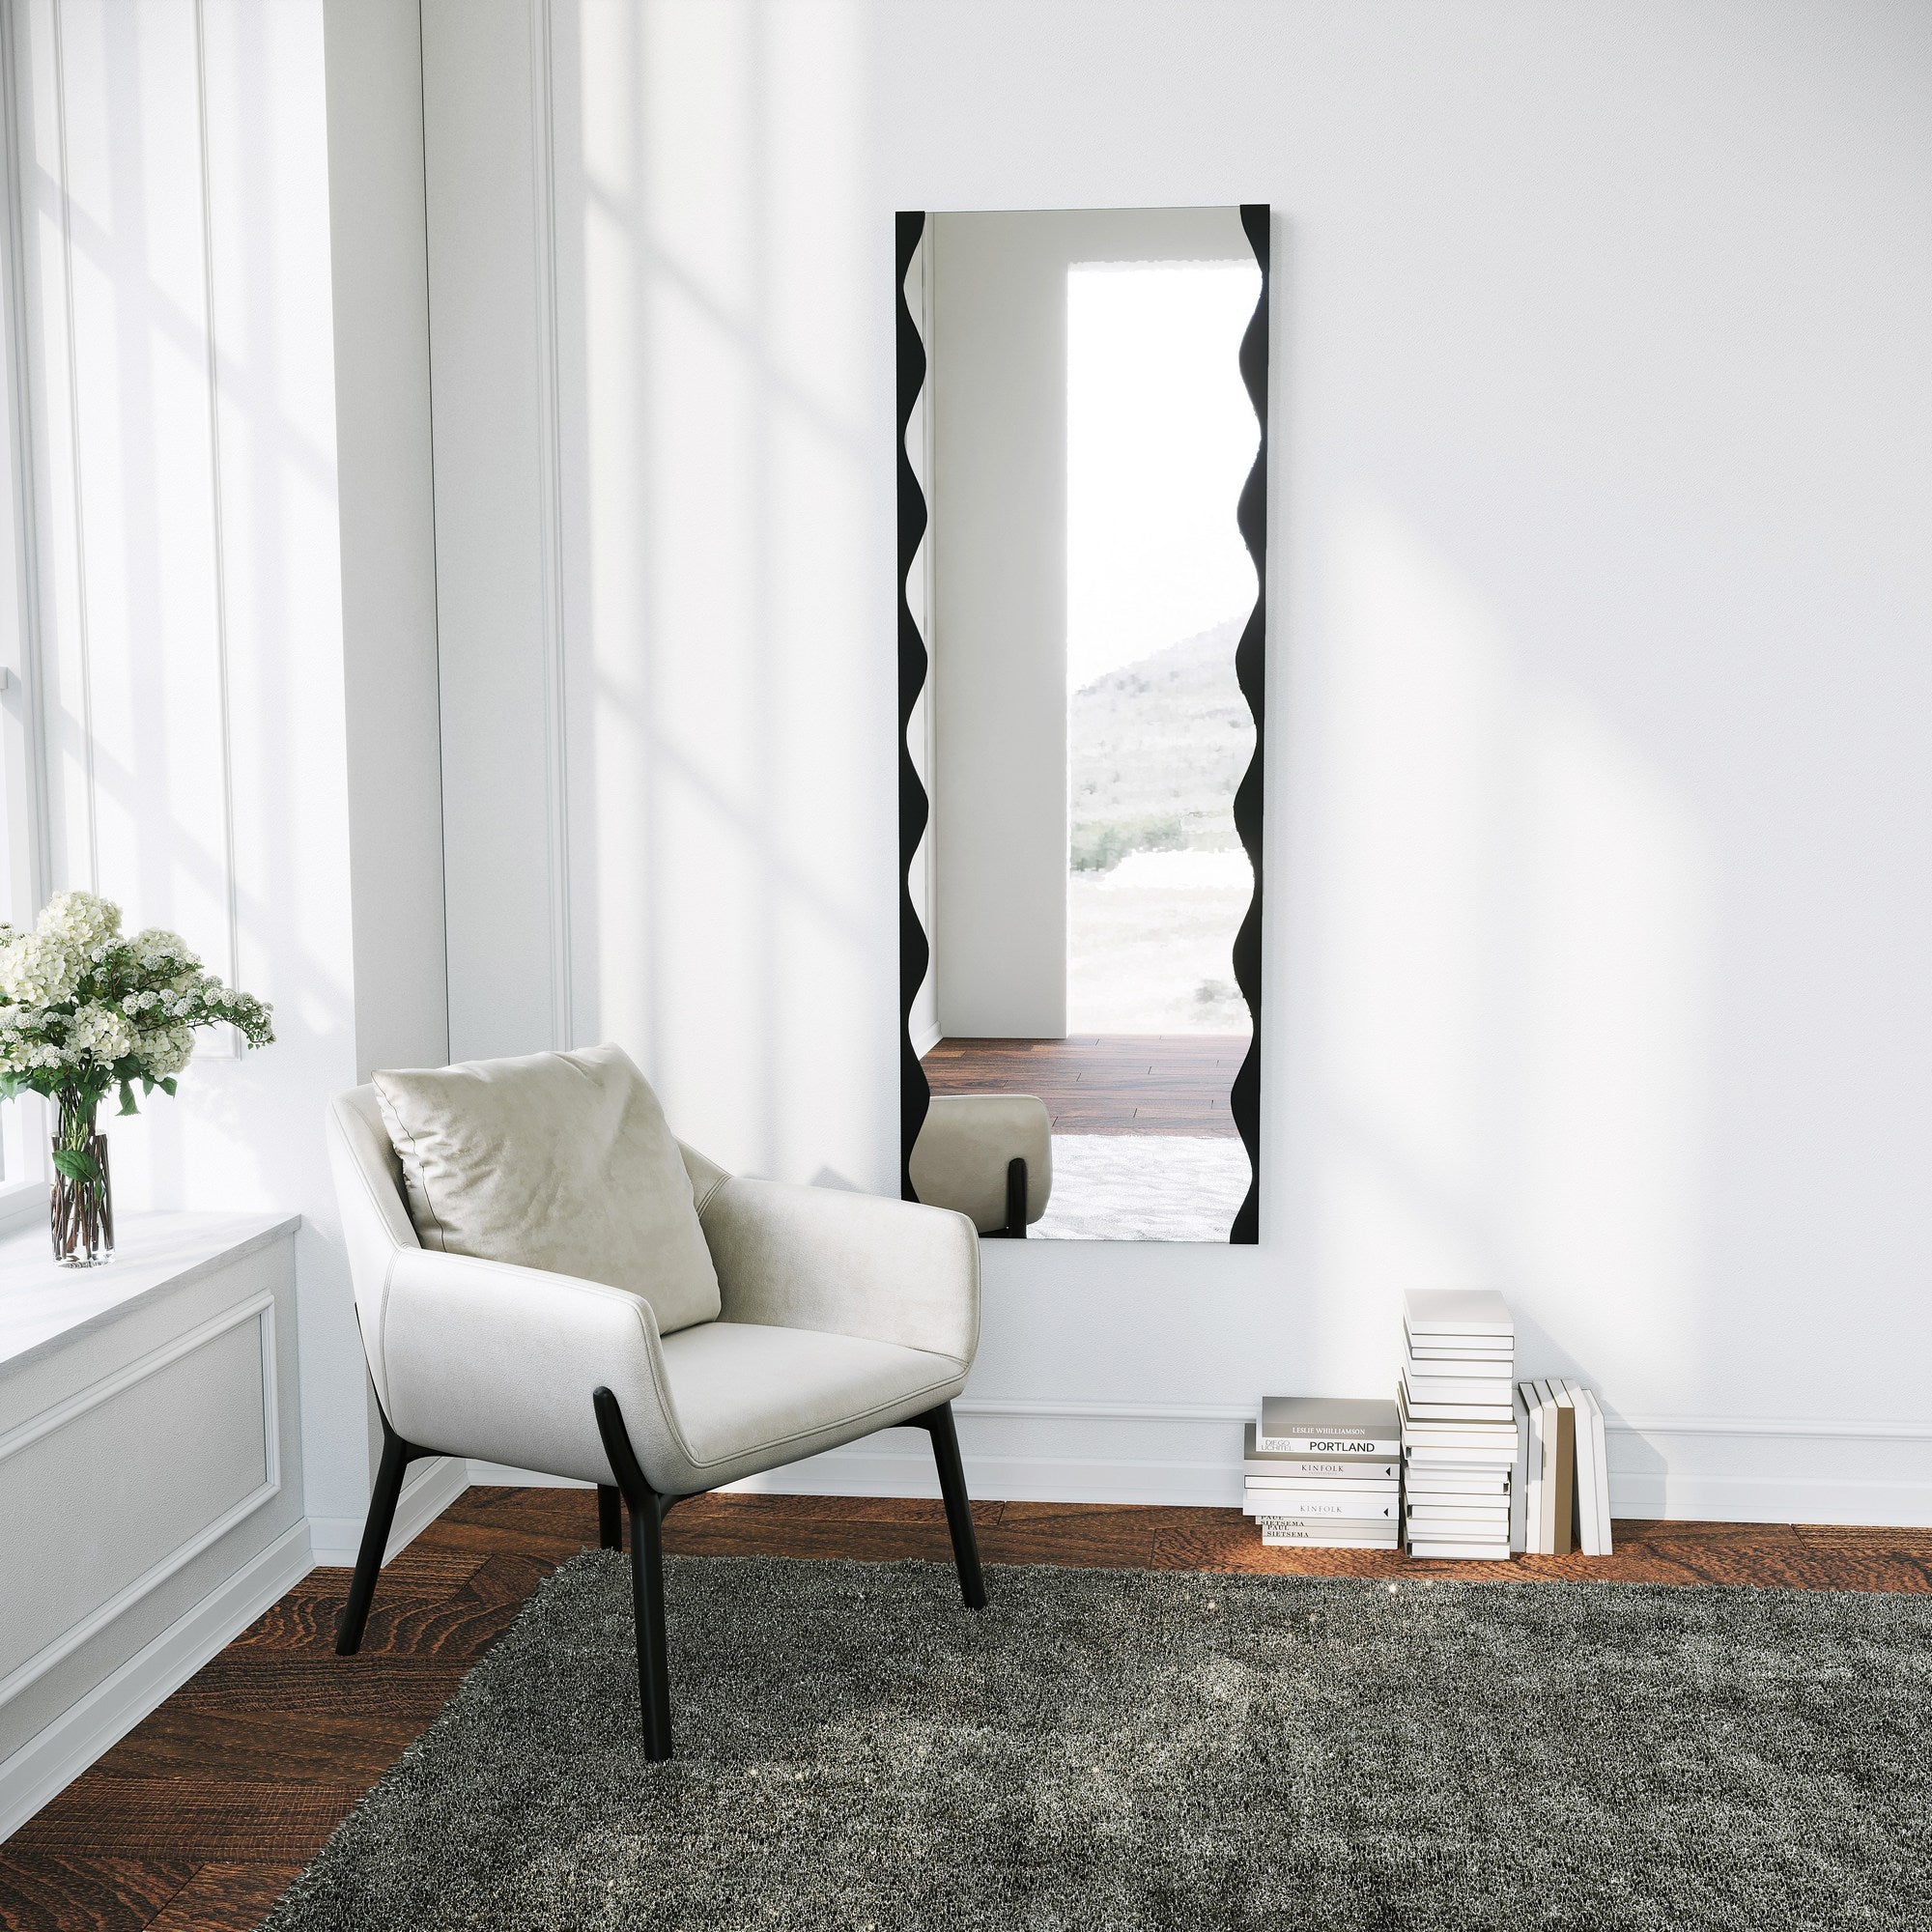 Specchio design rettangolare alto da muro effetto wave cornice metallo –  Colly Shop